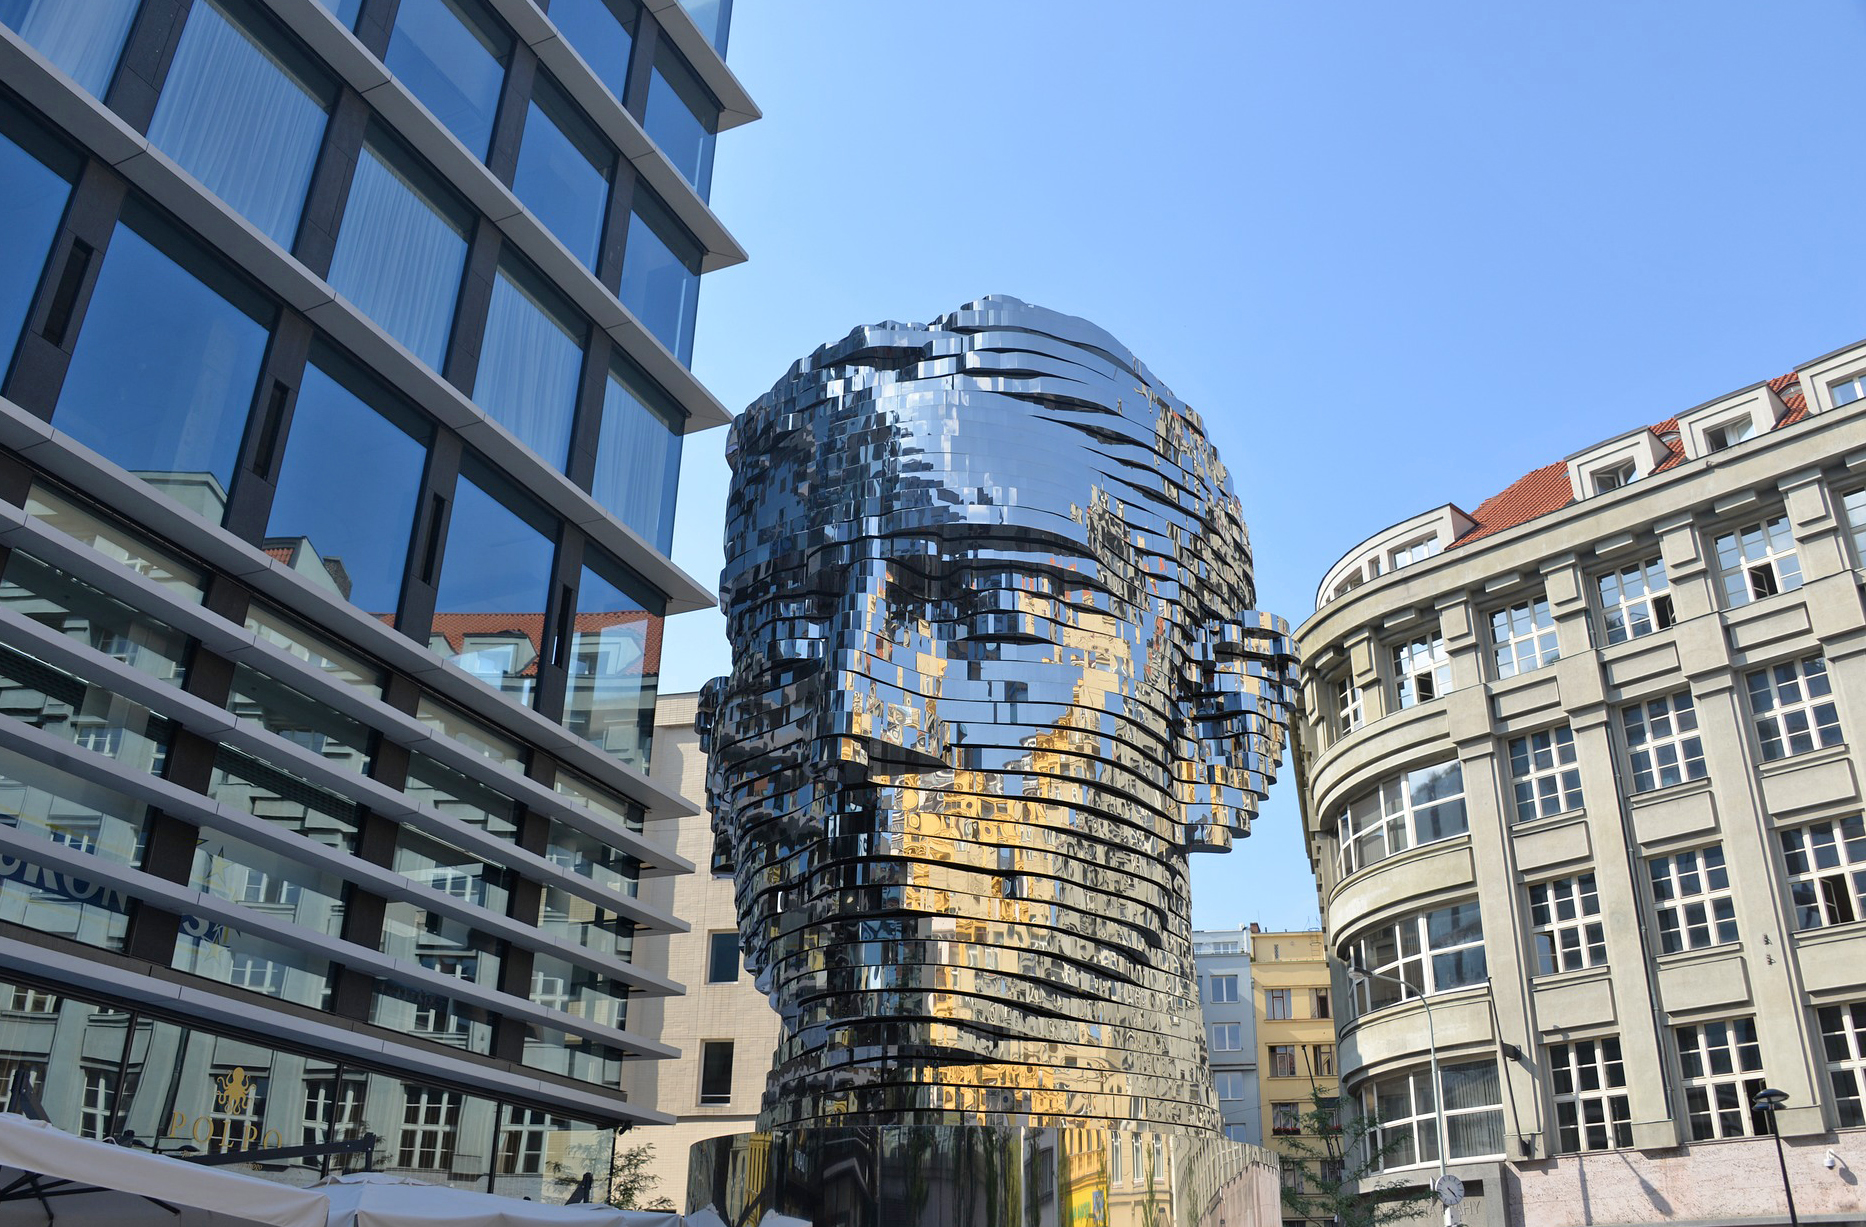 Franz Kafka Sculpture by David Cerny in Prague